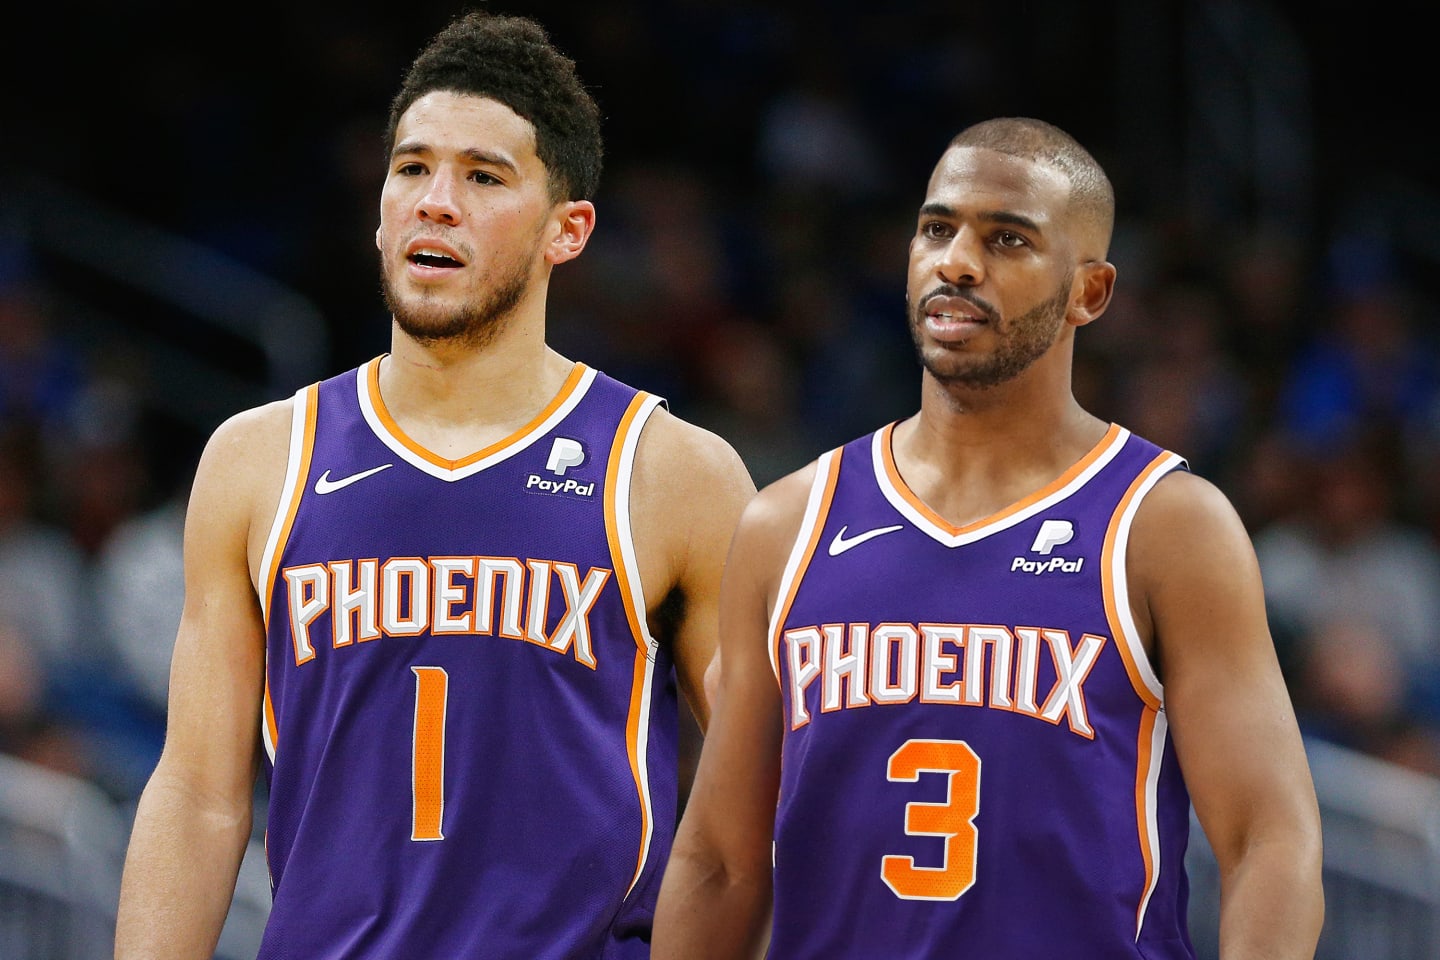 Oklahoma City Thunder vs. Phoenix Suns - 1/27/2021 Free Pick & NBA Betting Prediction